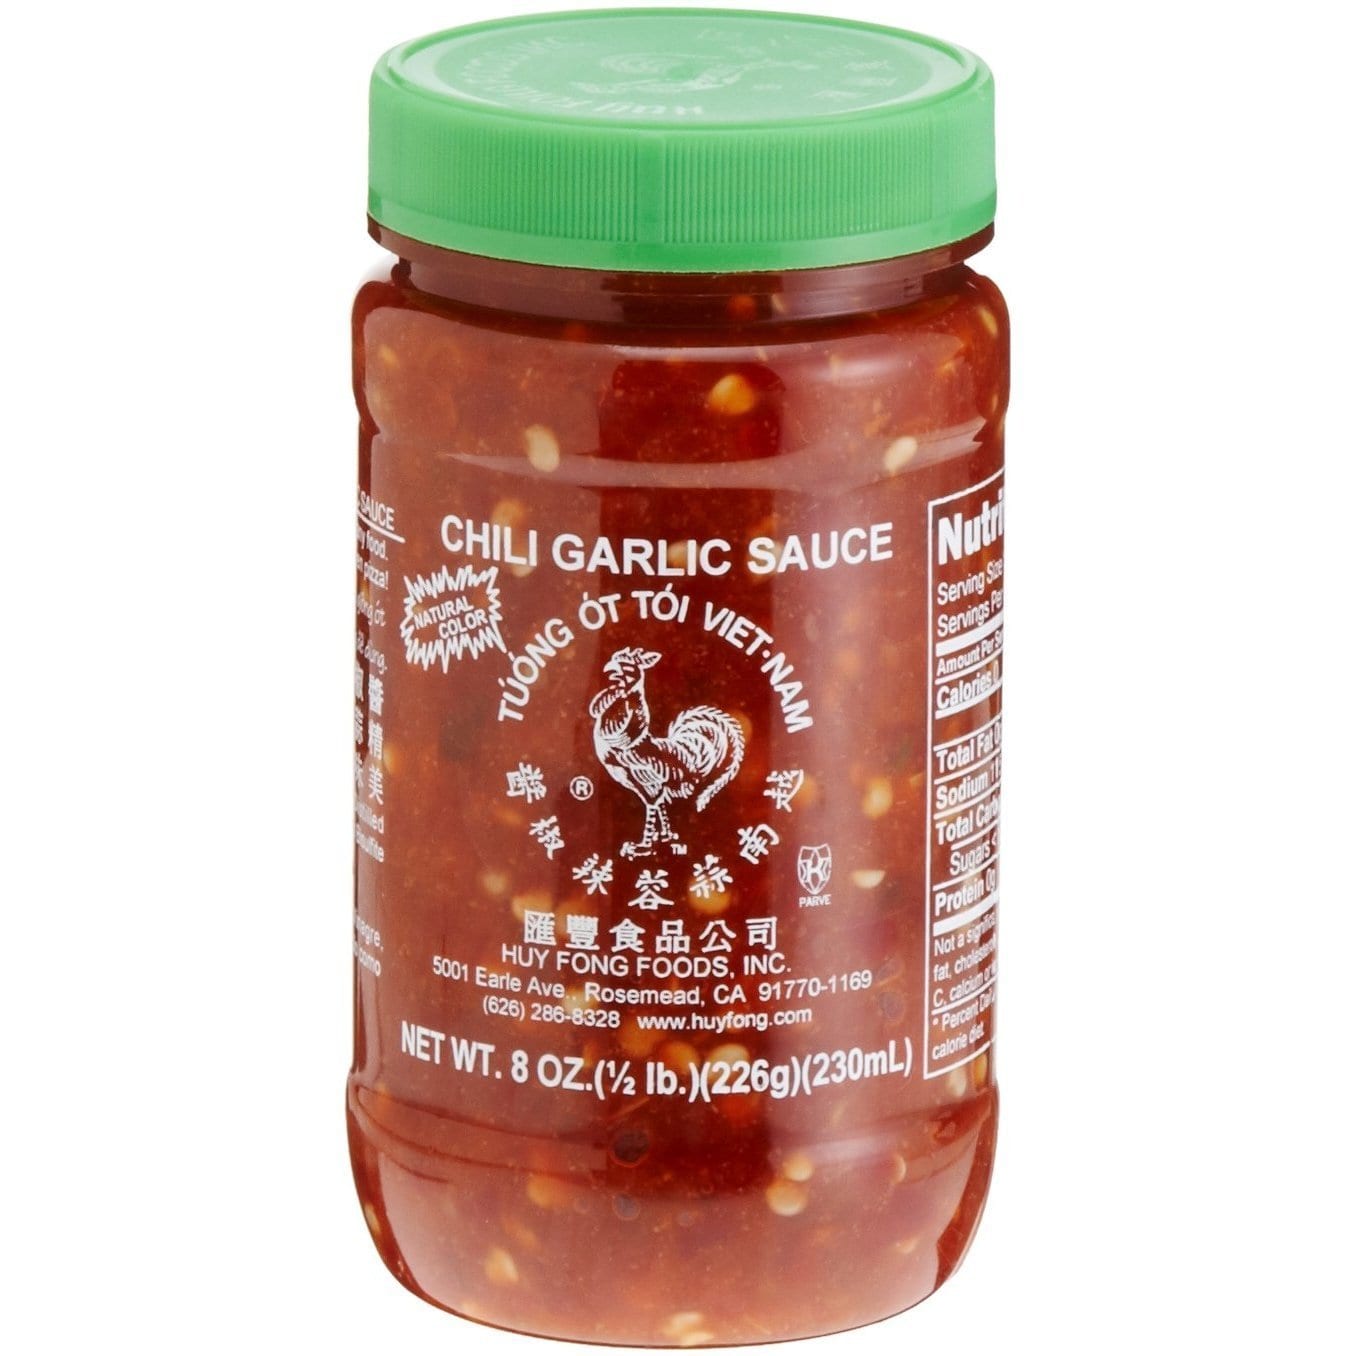 Asian hot garlic chili sauce